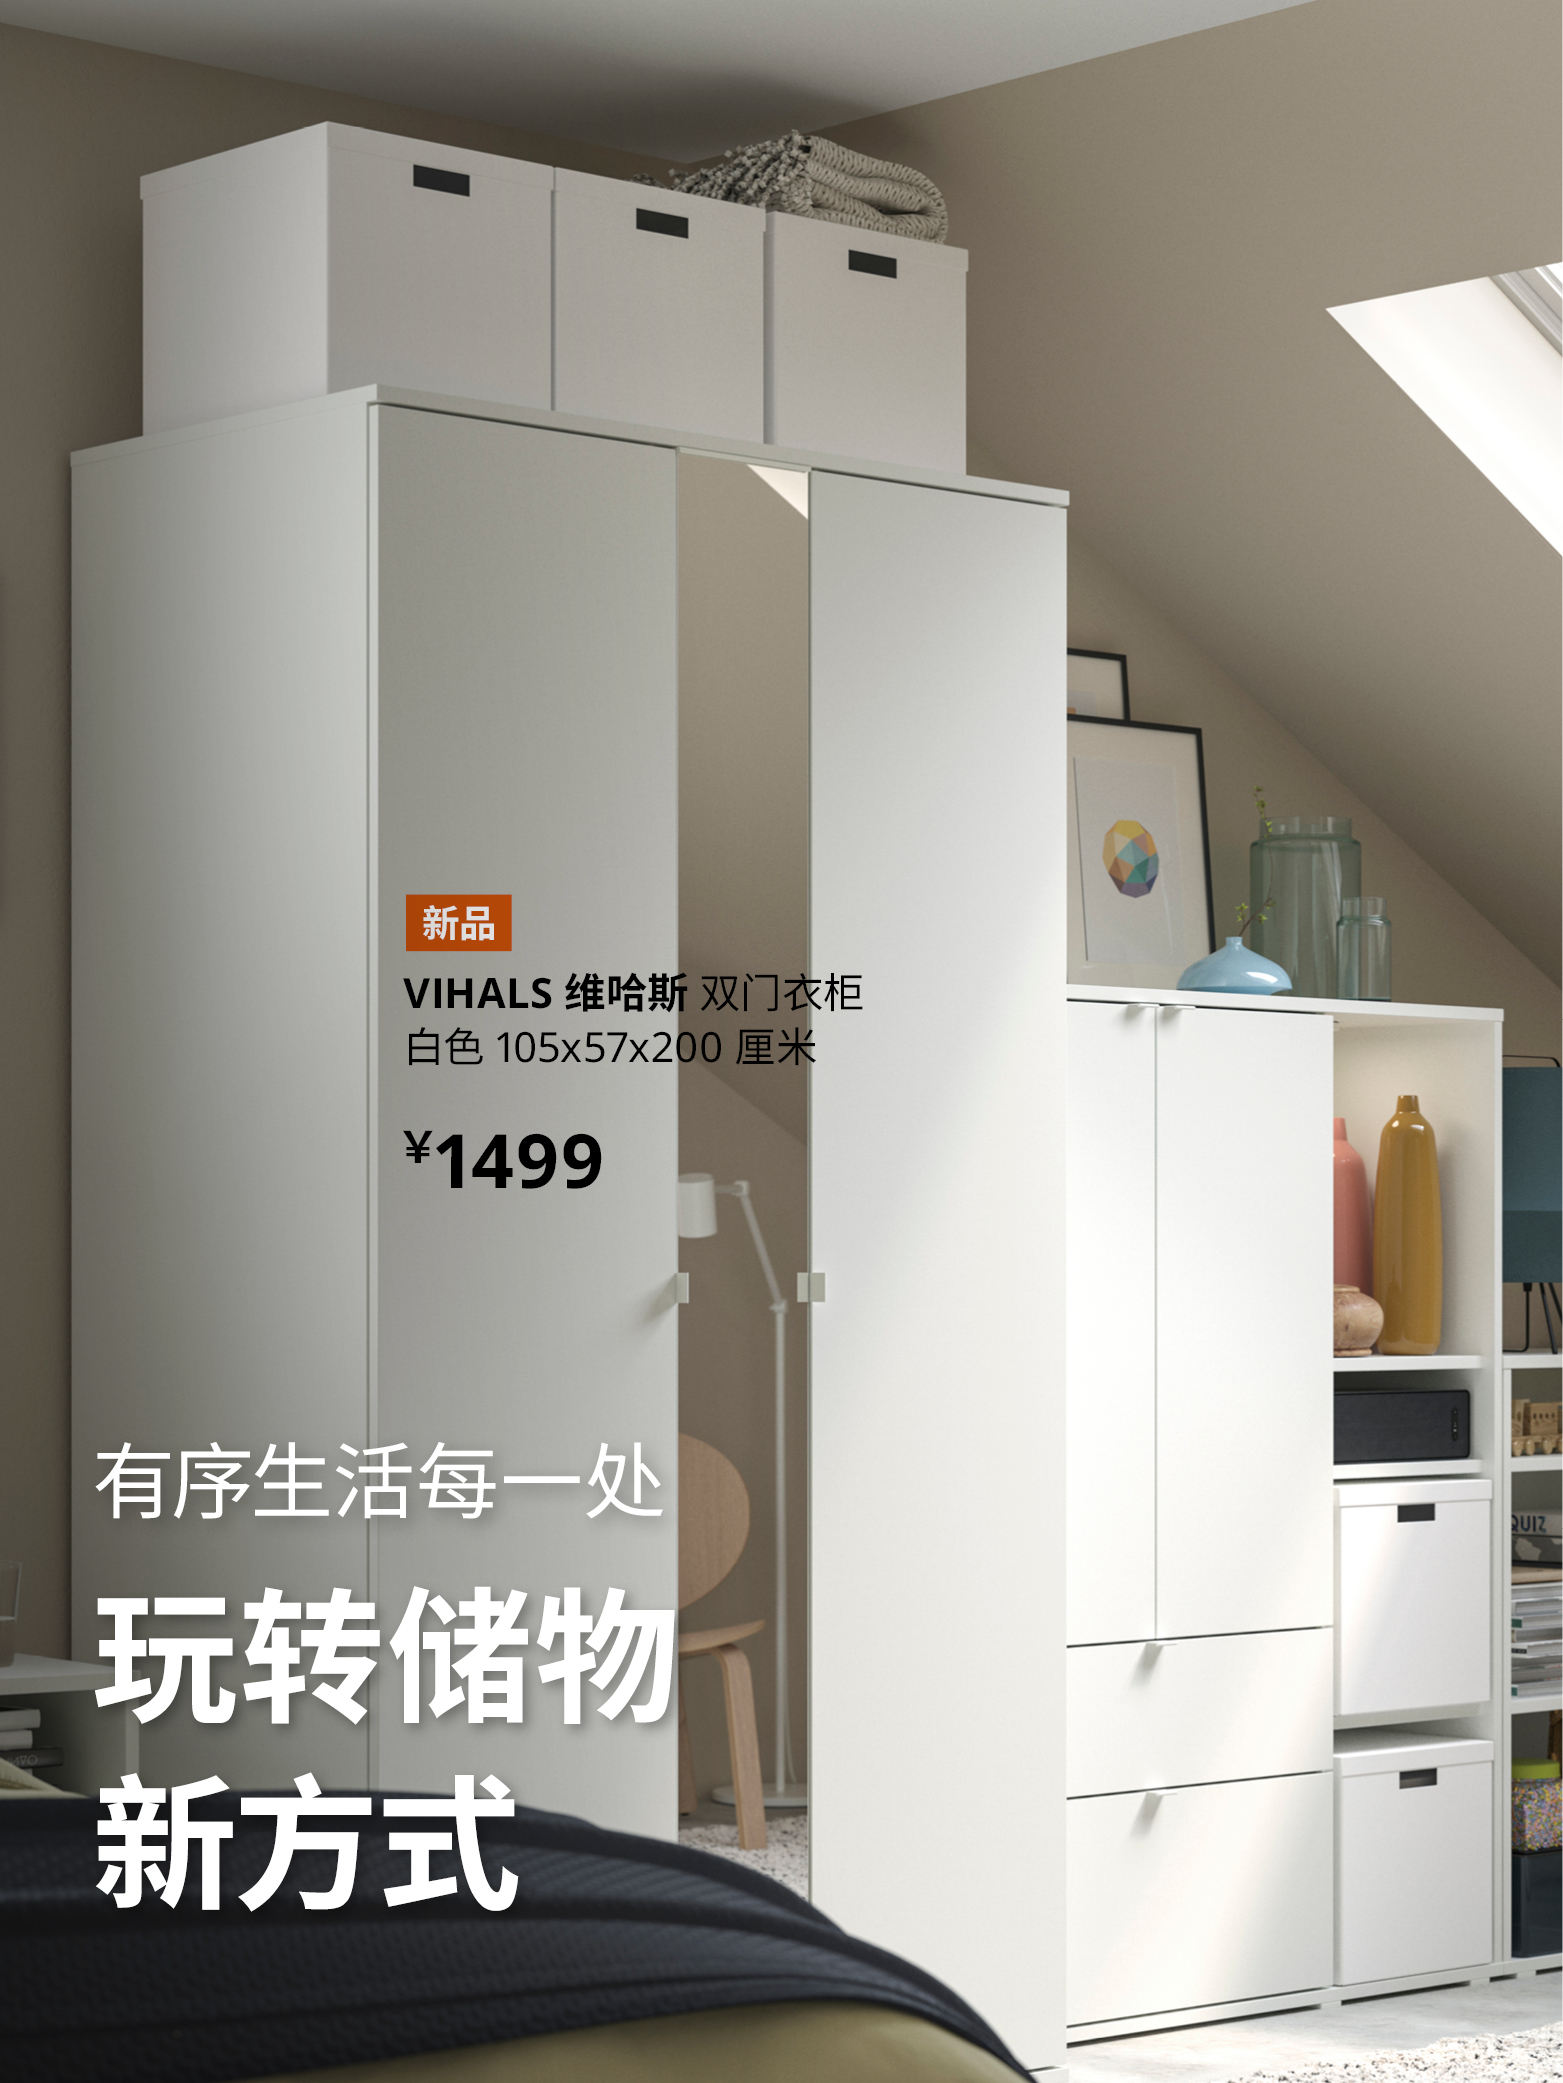 宜家家居官网 宜家电商 提供客厅 卧室 厨房 各类家居灵感和产品解决方案 Ikea